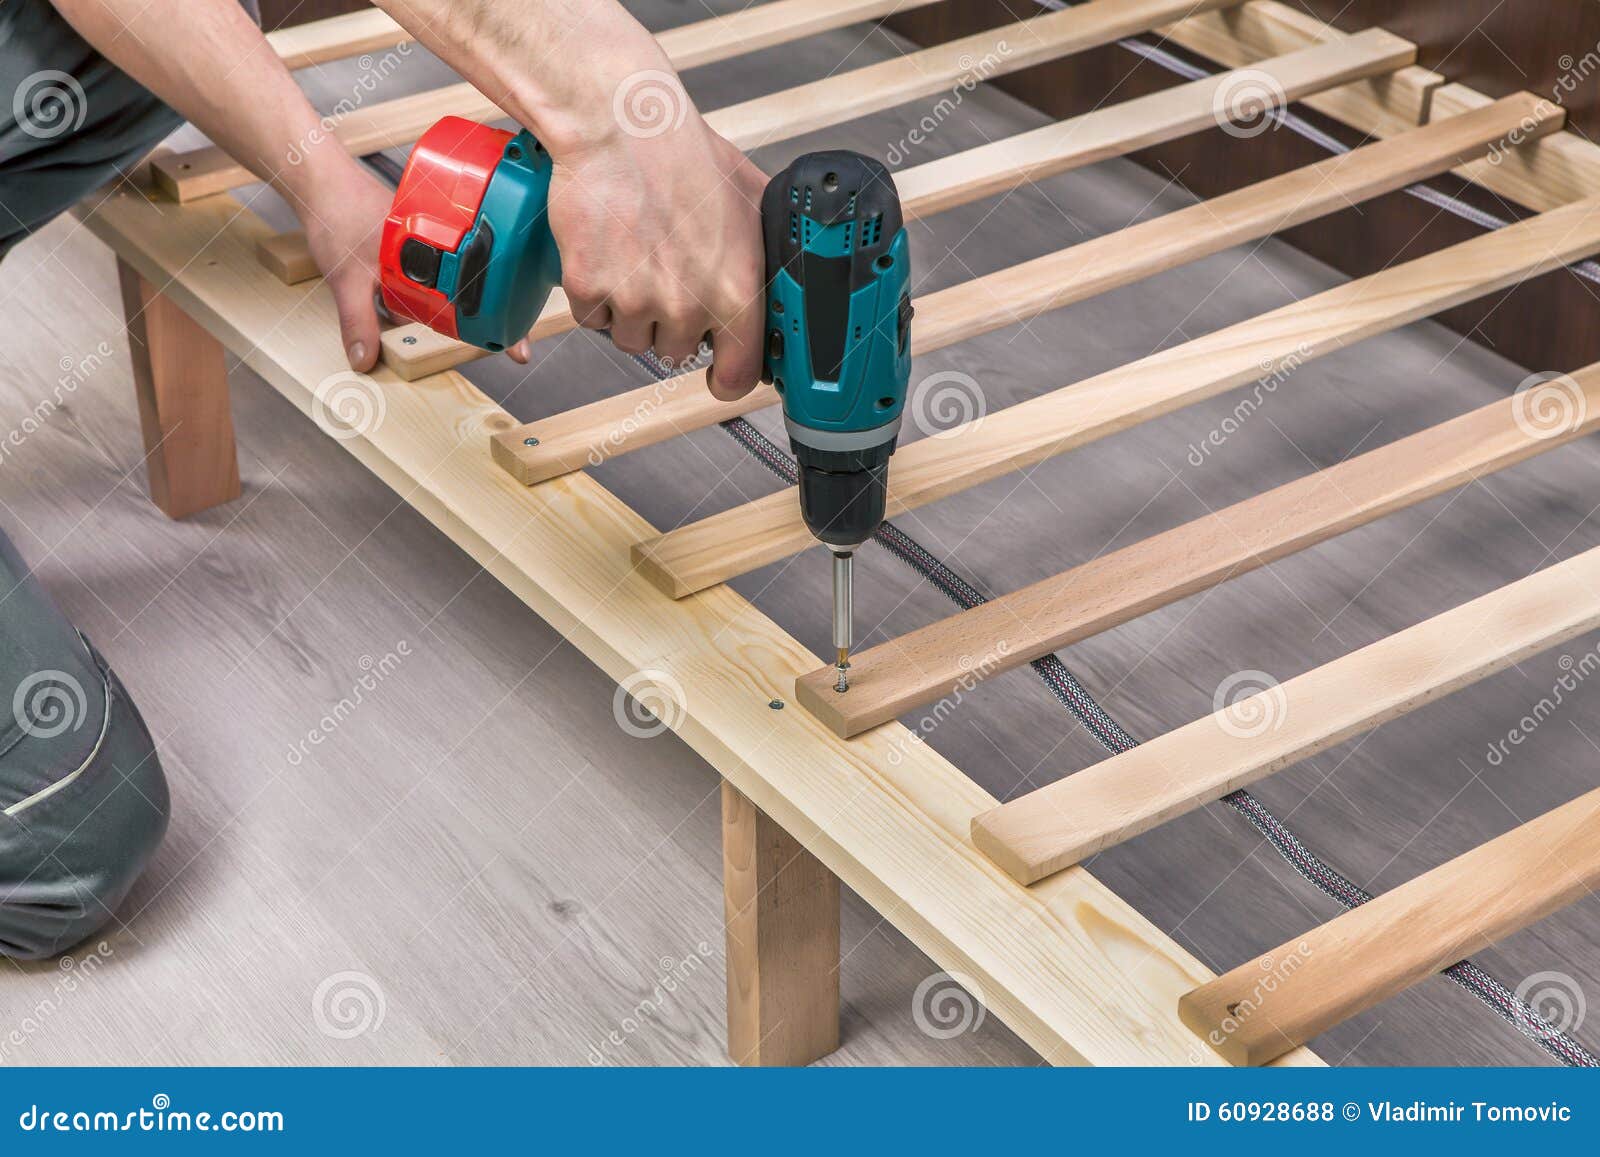 wooden furniture assembling- woodworker screwing screws